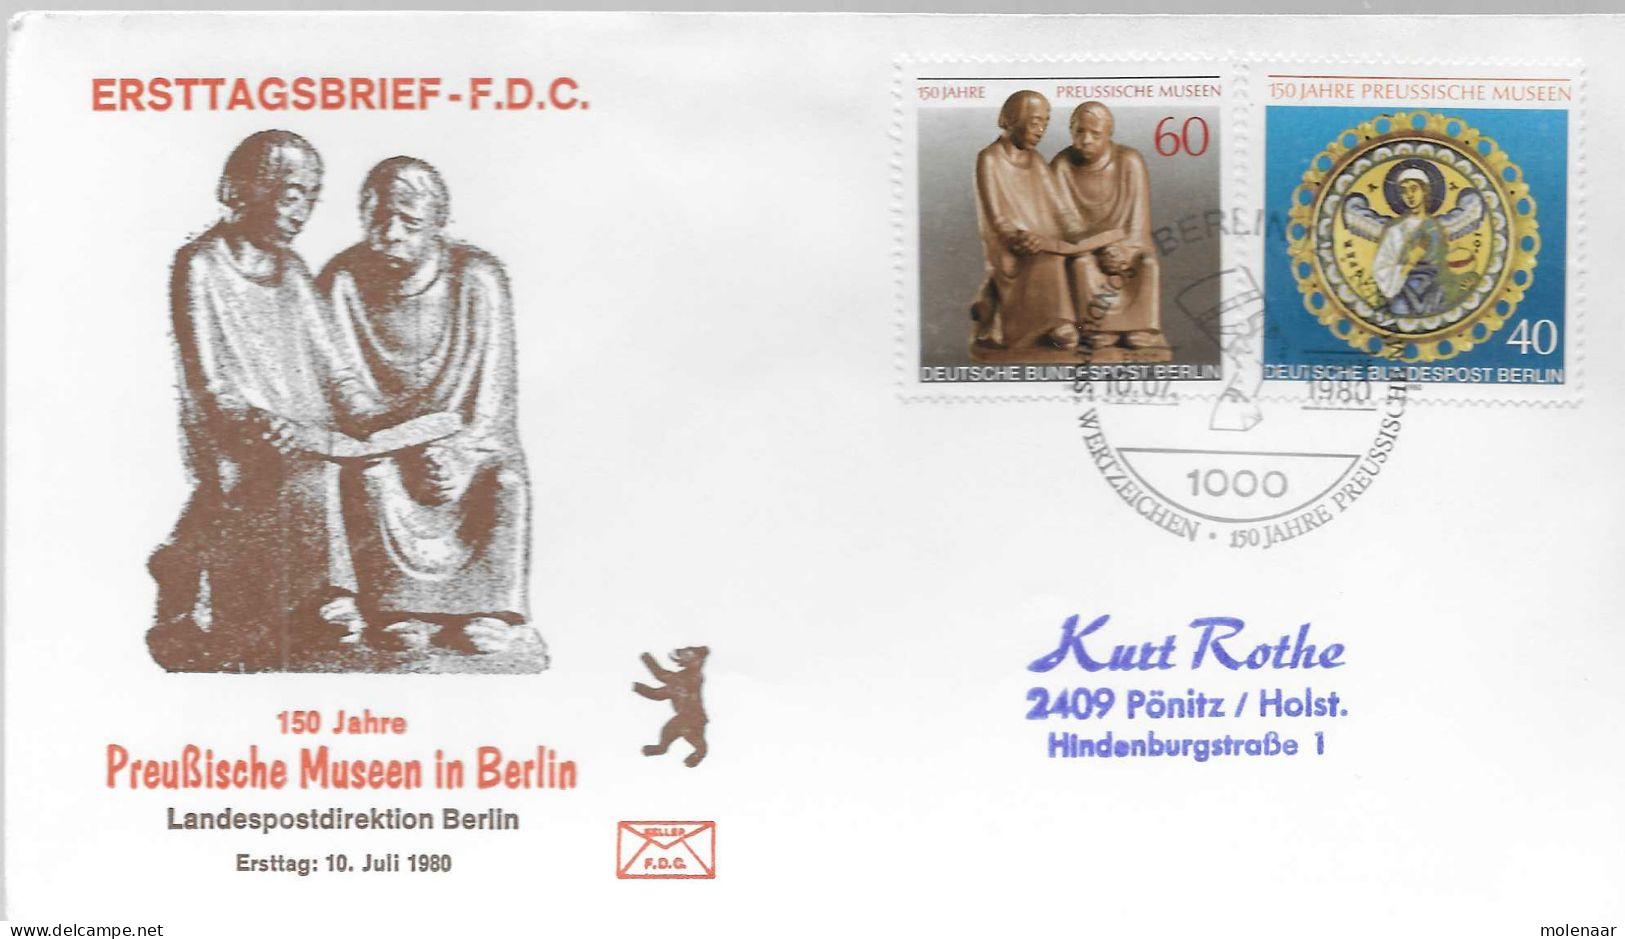 Postzegels > Europa > Duitsland > Berljin > 1980-1991 > Brief Met No. 625-626 (17193) - Covers & Documents